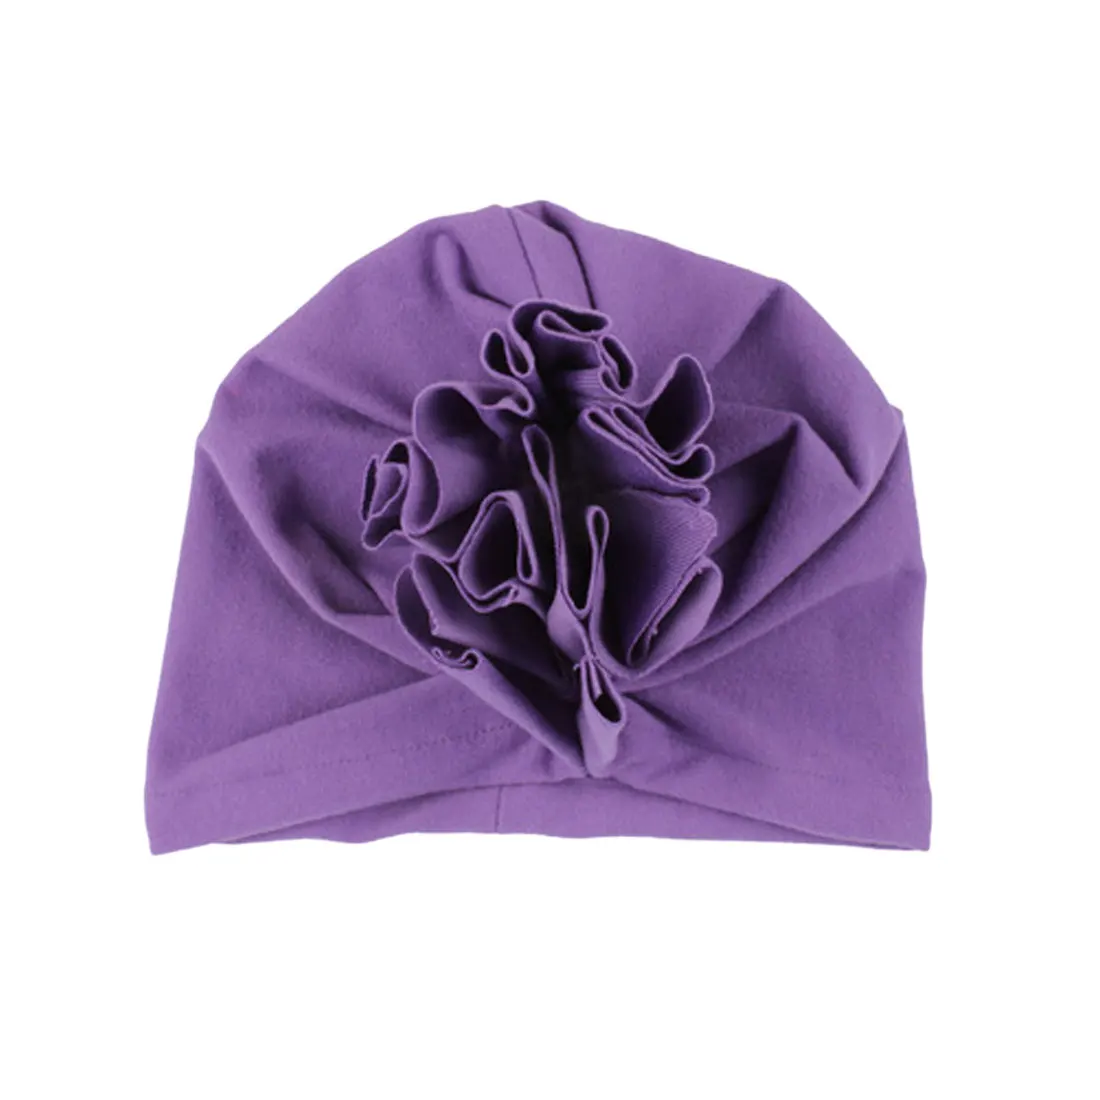 Дизайн, милые хлопковые шапочки для детей, мягкая тюрбан для девочек, летняя шапка в индийском стиле, детская шапочка для новорожденных девочек - Цвет: Фиолетовый